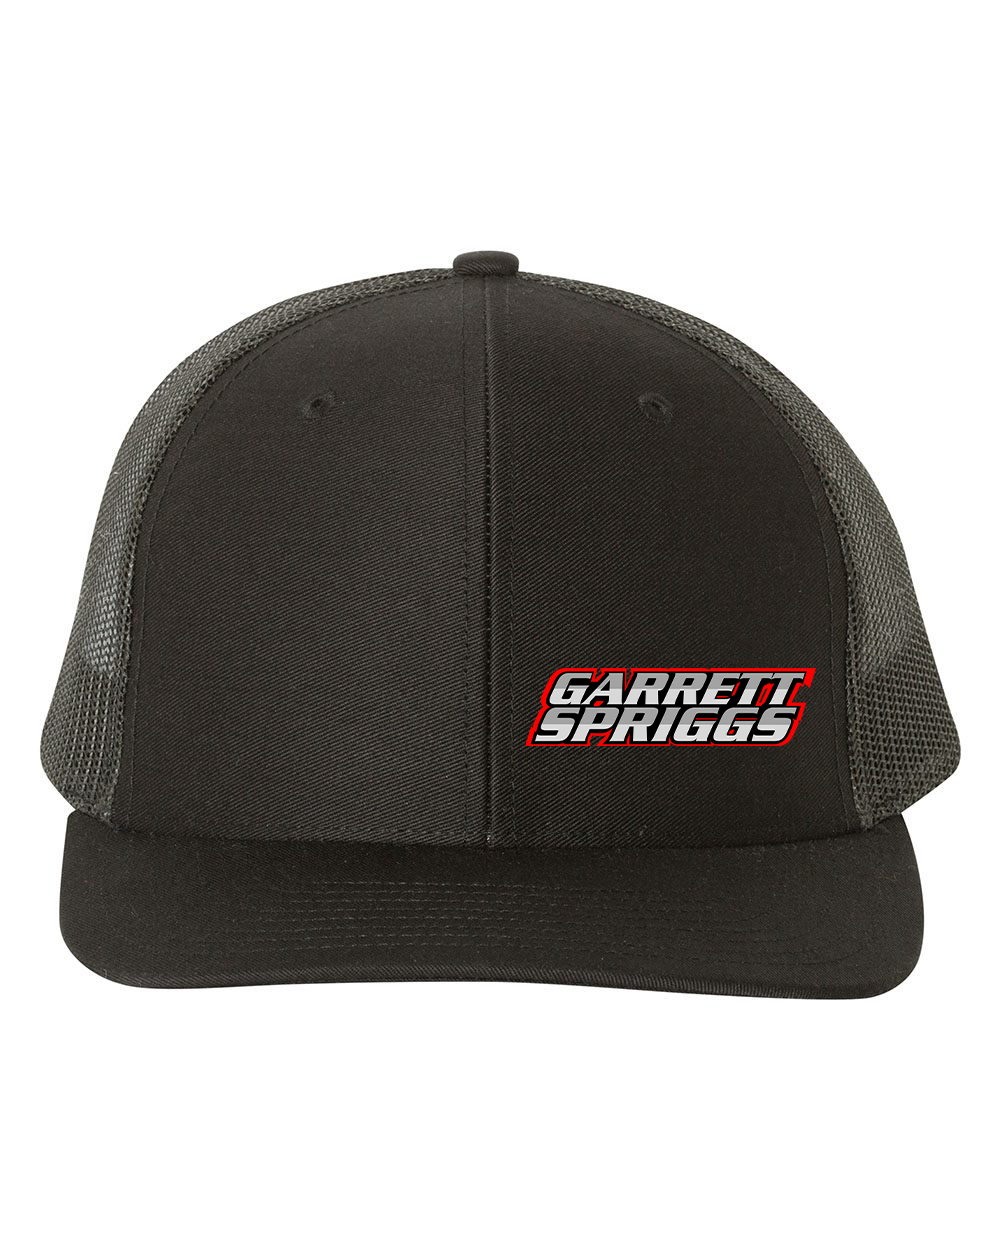 Garrett Spriggs Hats Black Acid Apparel